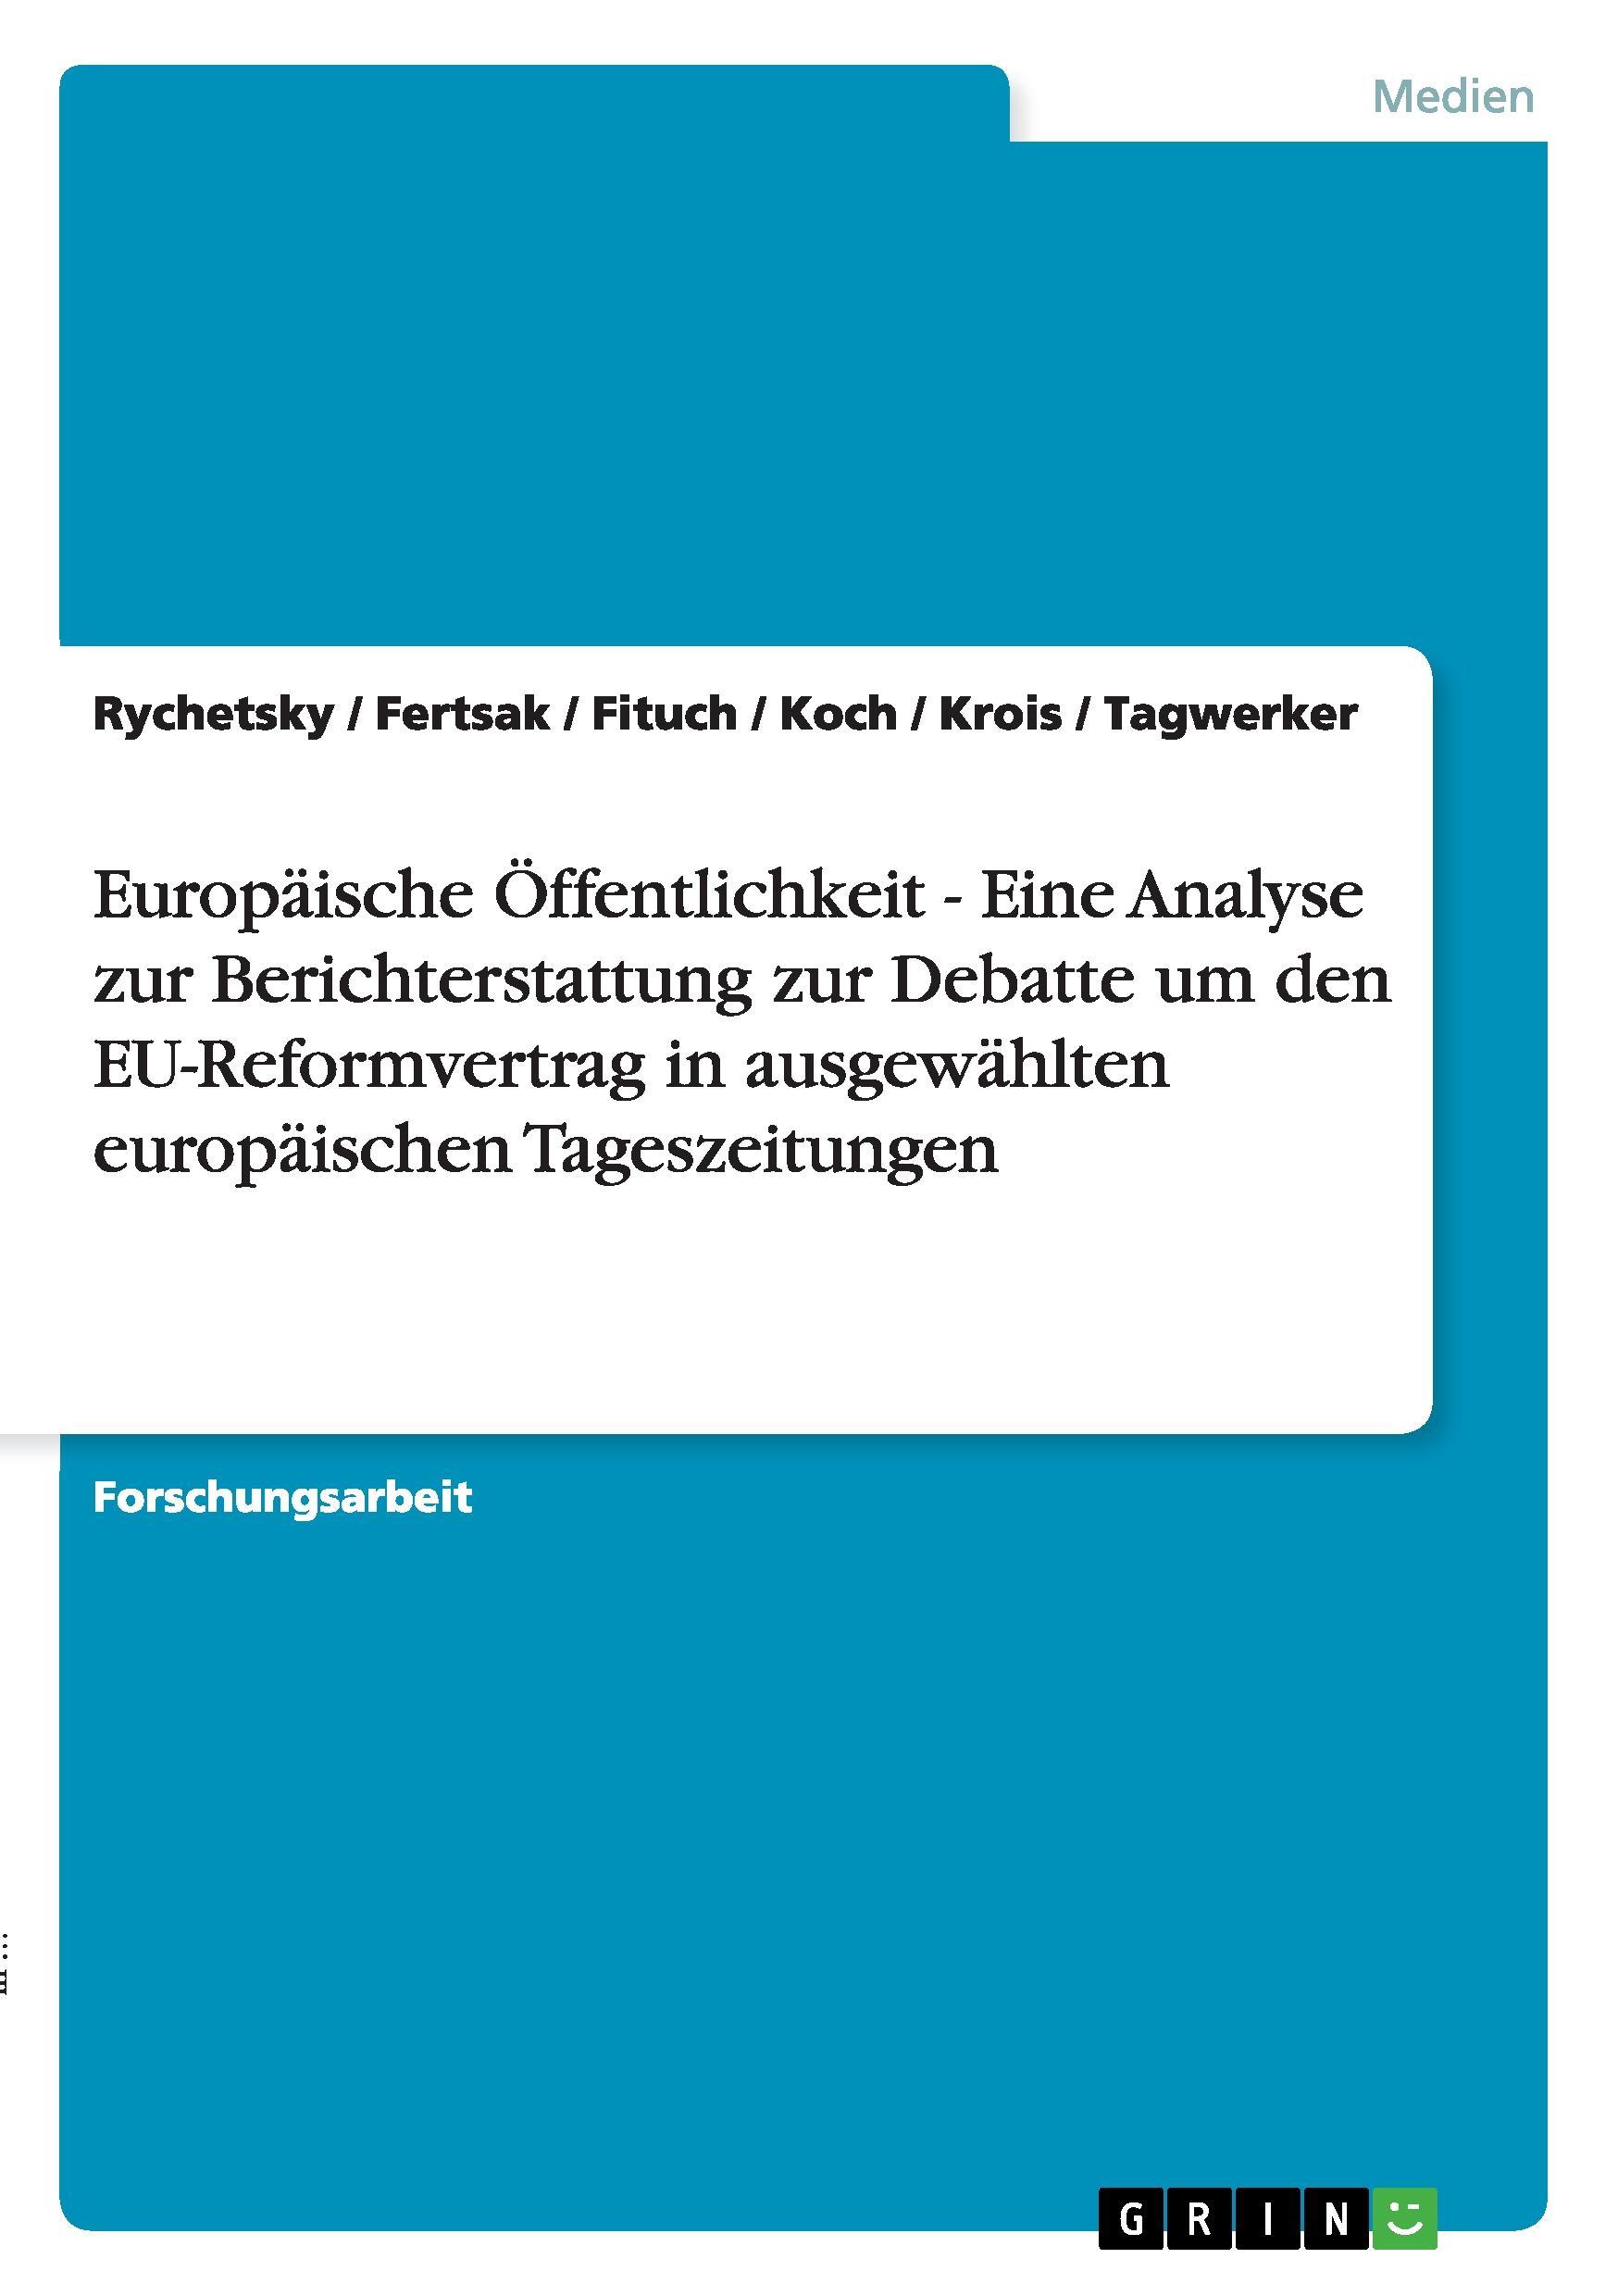 Europaeische Oeffentlichkeit - Eine Analyse zur Berichterstattung zur Debatte um den EU-Reformvertrag in ausgewaehlten europaeischen Tageszeitungen - Fituch Tagwerker Rychetsky Fertsak